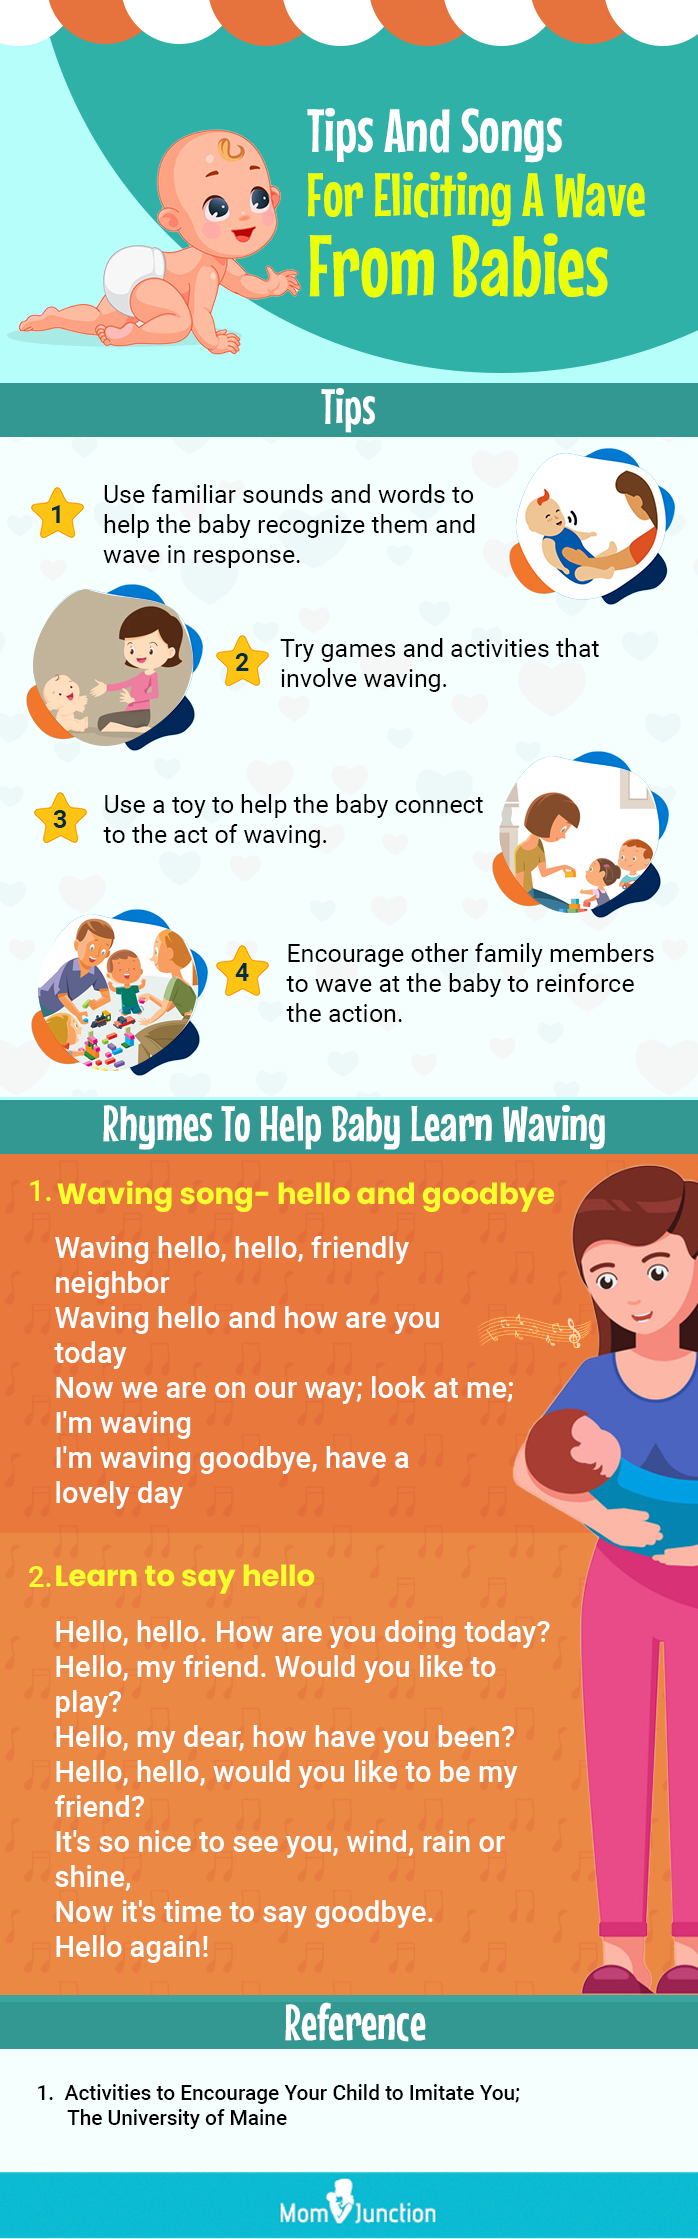 婴儿歌曲(信息图)